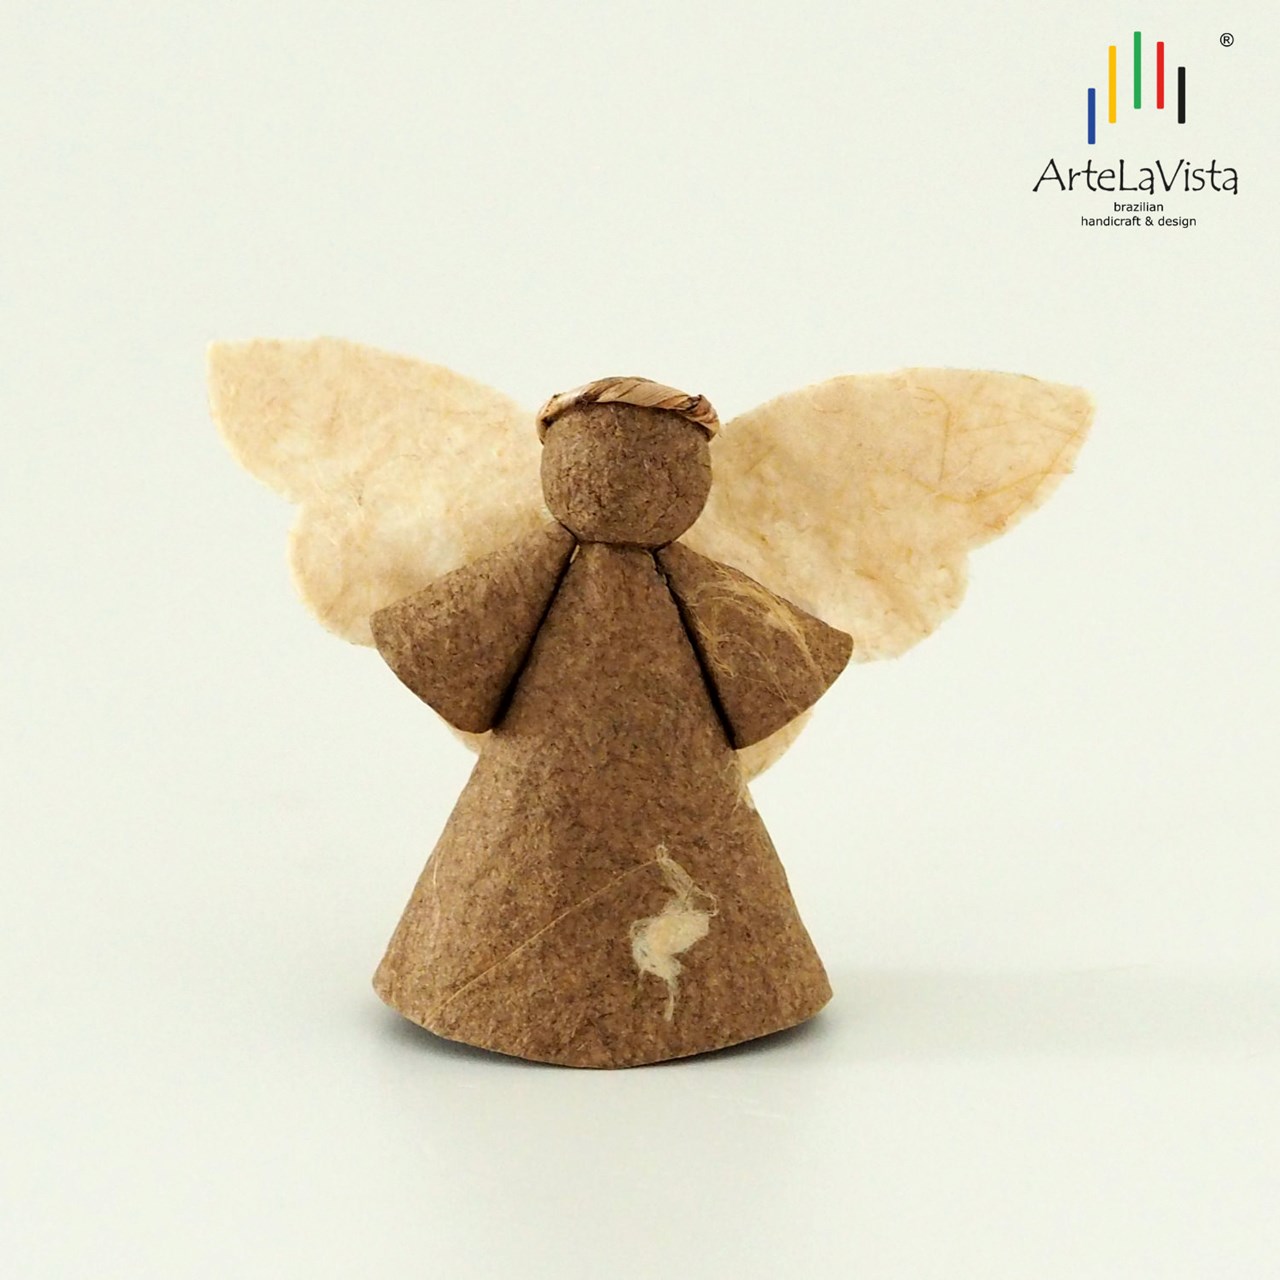 ArteLaVista - brazilian handicraft & design Produkt-Beispiele Engel aus Bananenfasernpapier - braun P